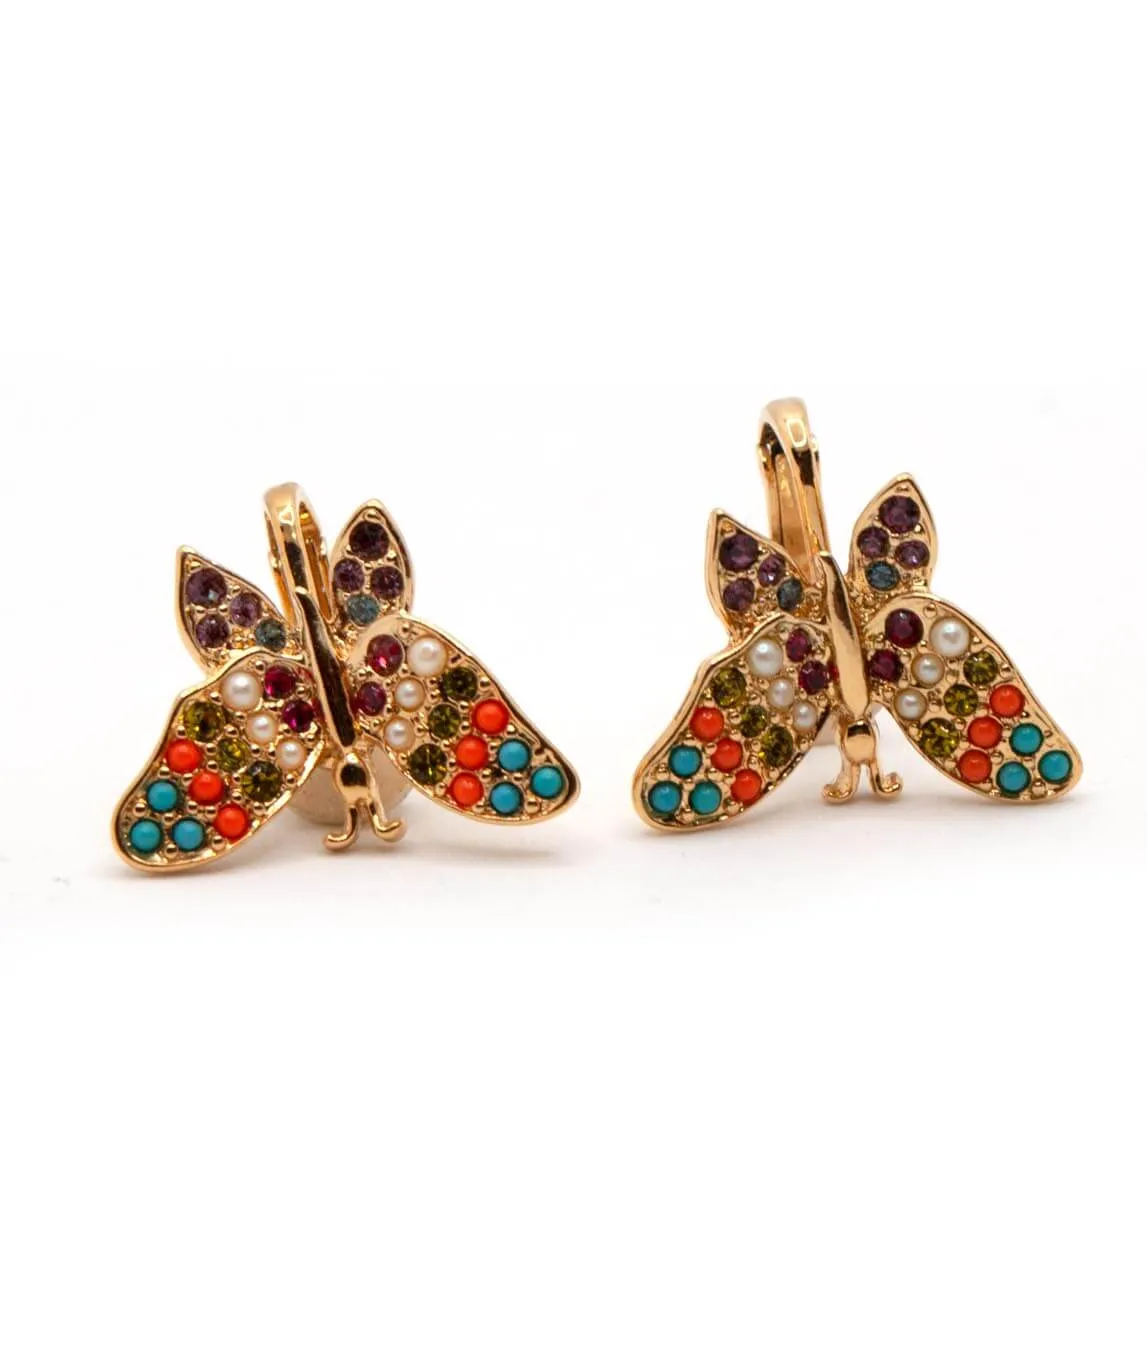 Vintage D'Orlan butterfly earrings upside down